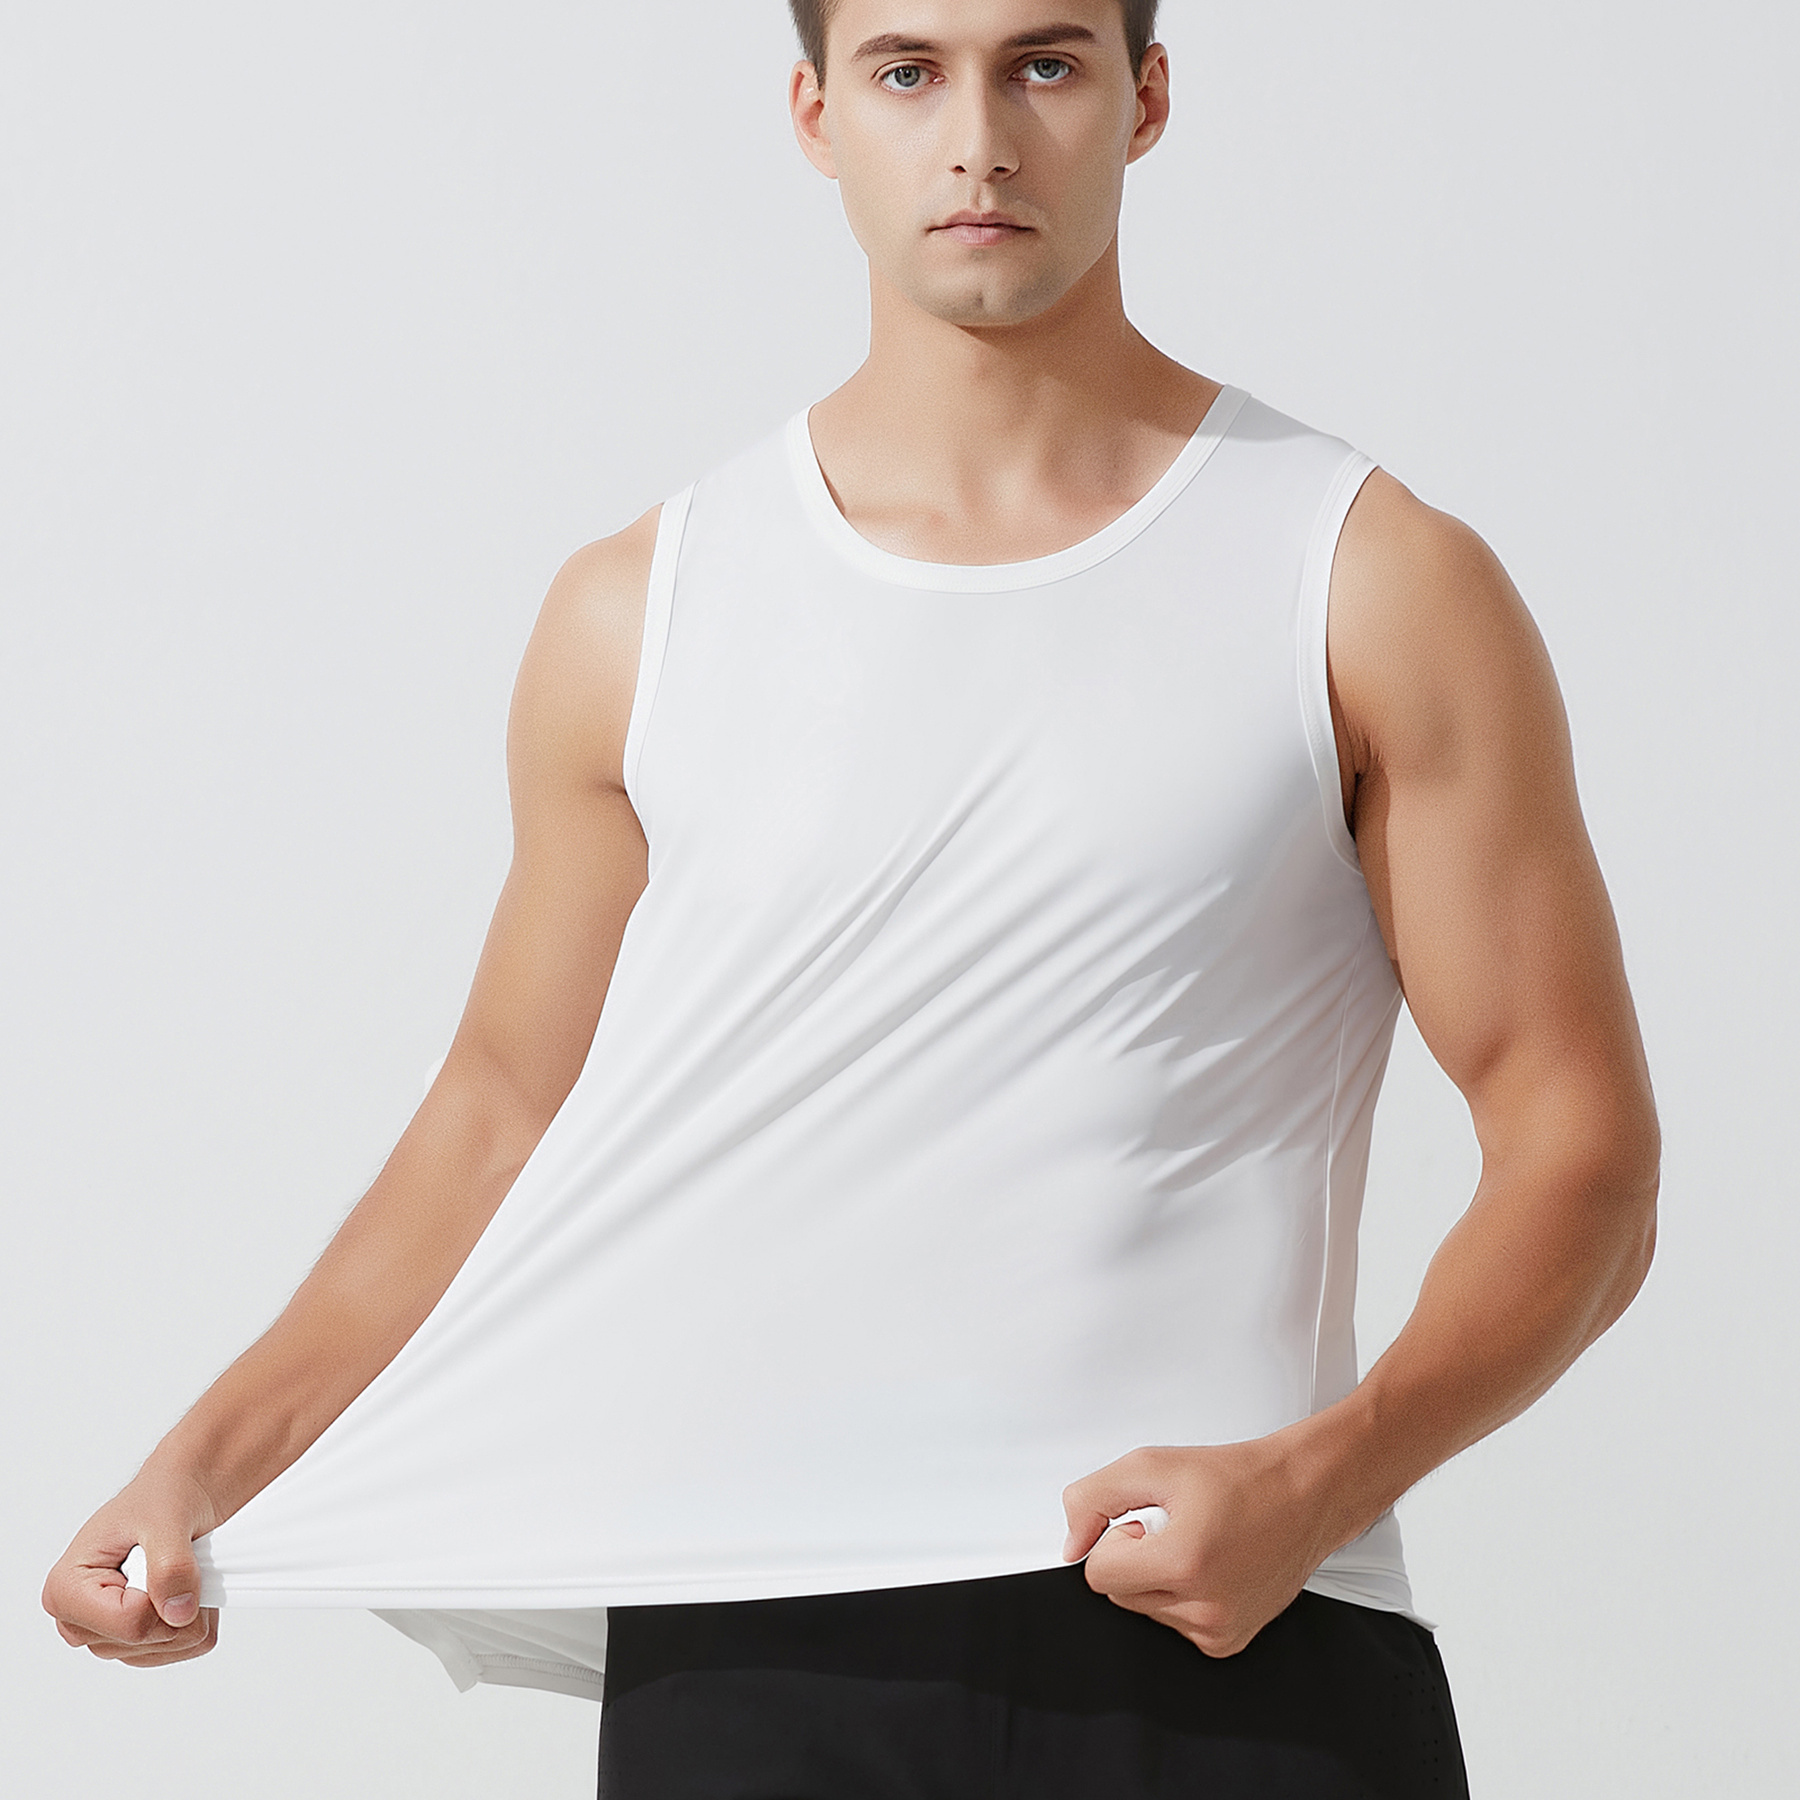 One Size Smaller Thin Fabric Men's Regular Fit Tank Top Summer T Shirt ...